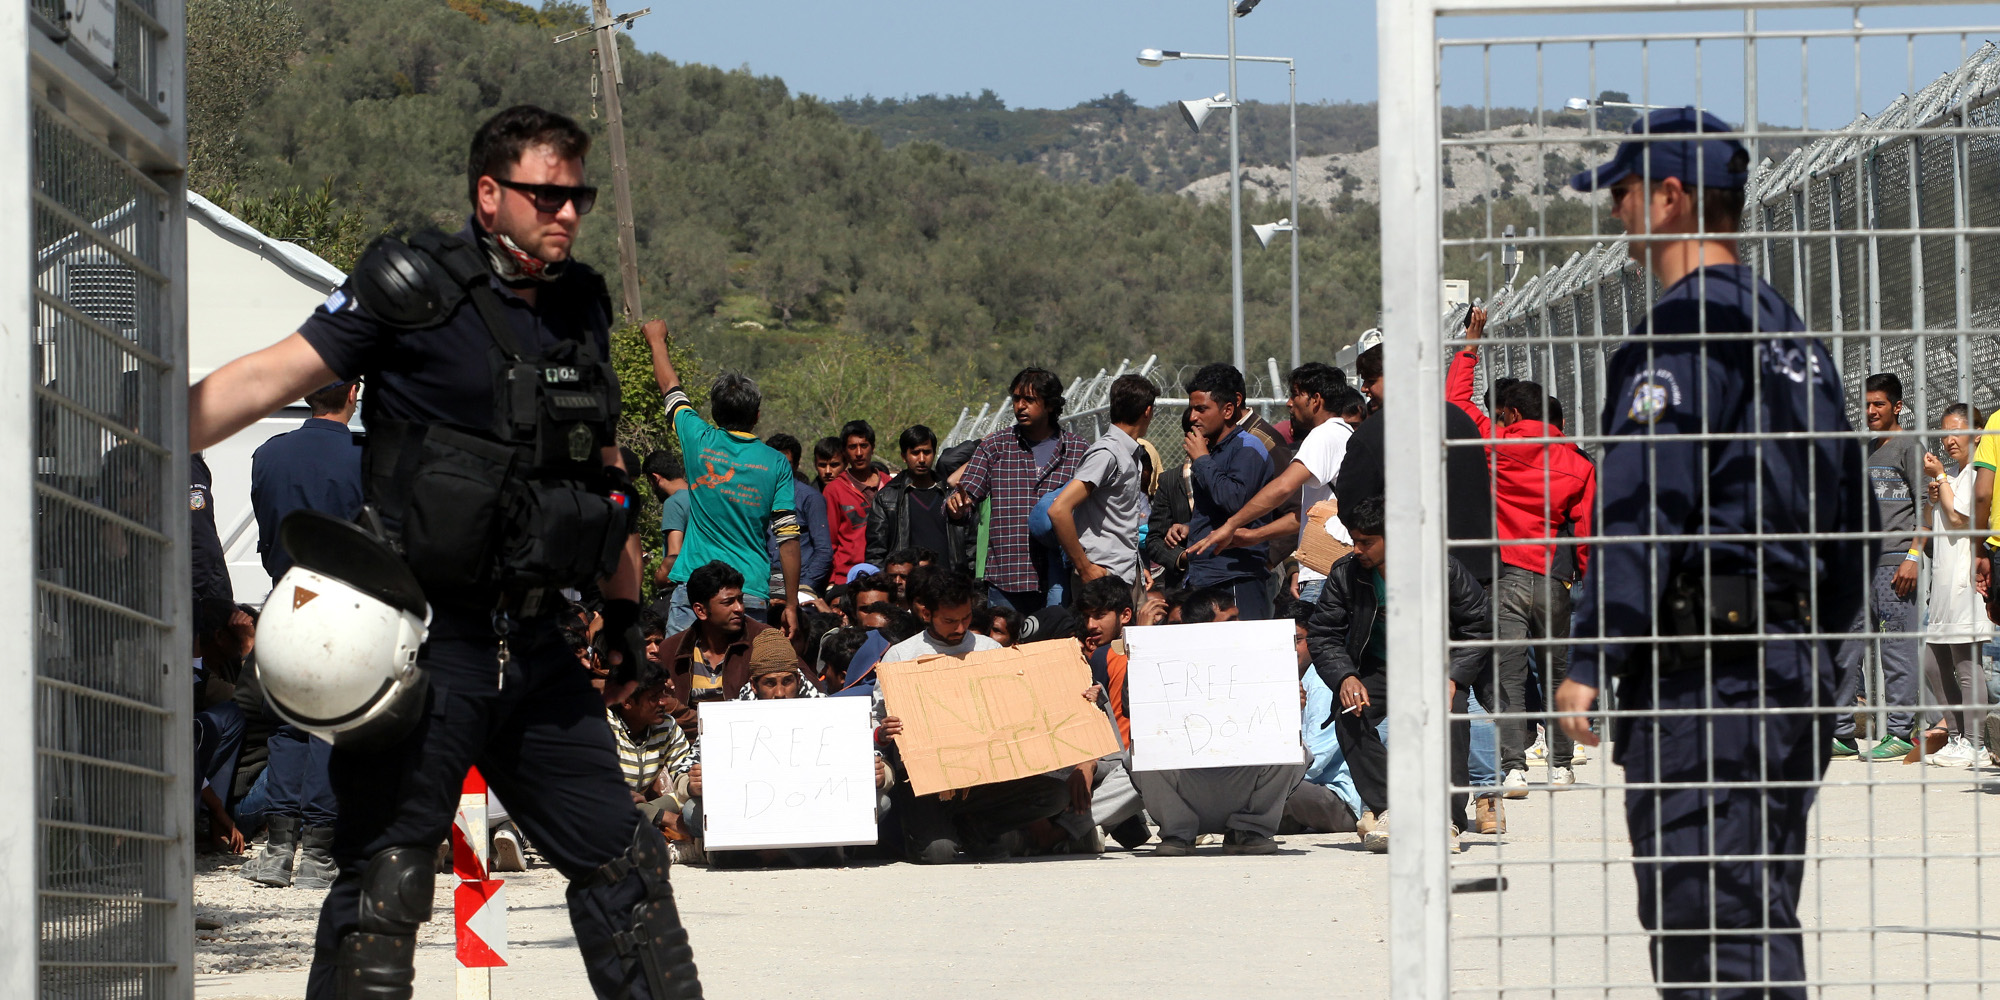 Λέσβος: Αποκλείστηκε η επιταγμένη περιοχή από τους πολίτες – Έτοιμοι για όλα – 41 αλλοδαποί μπήκαν χθες στο νησί